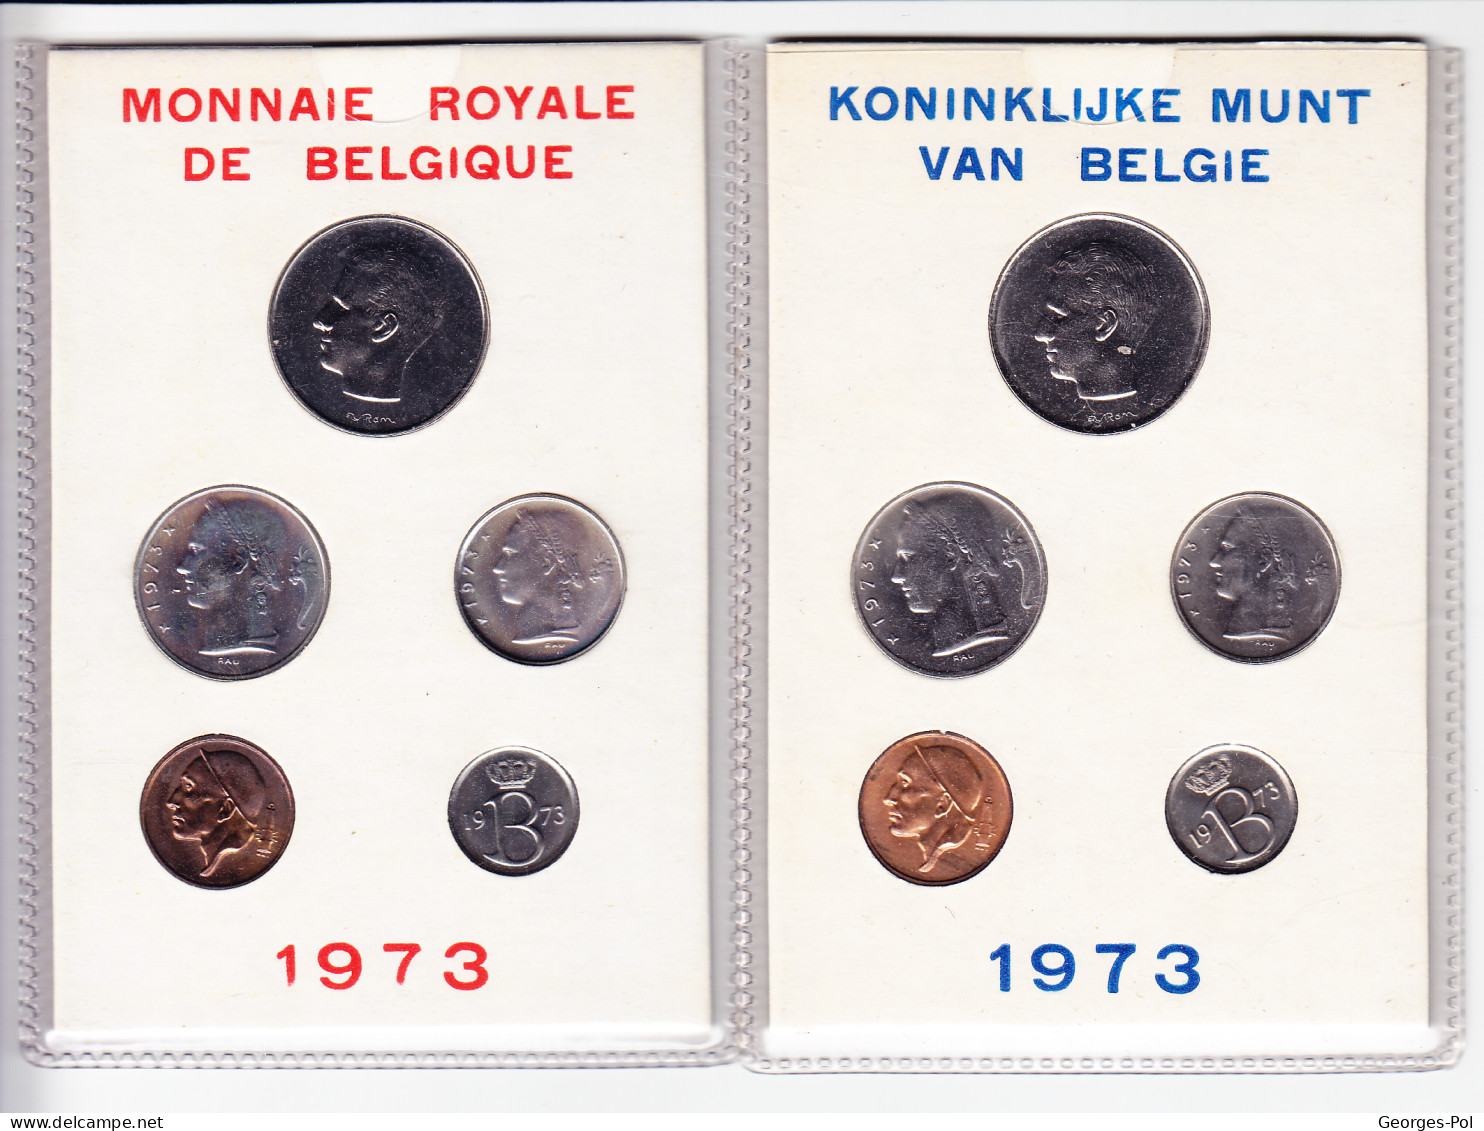 Monnaie Royale De Belgique 1973 Koninklijke Munt Van België. 2 Cartes De 5 Pièces Non Circulées - FDEC, BU, BE & Münzkassetten